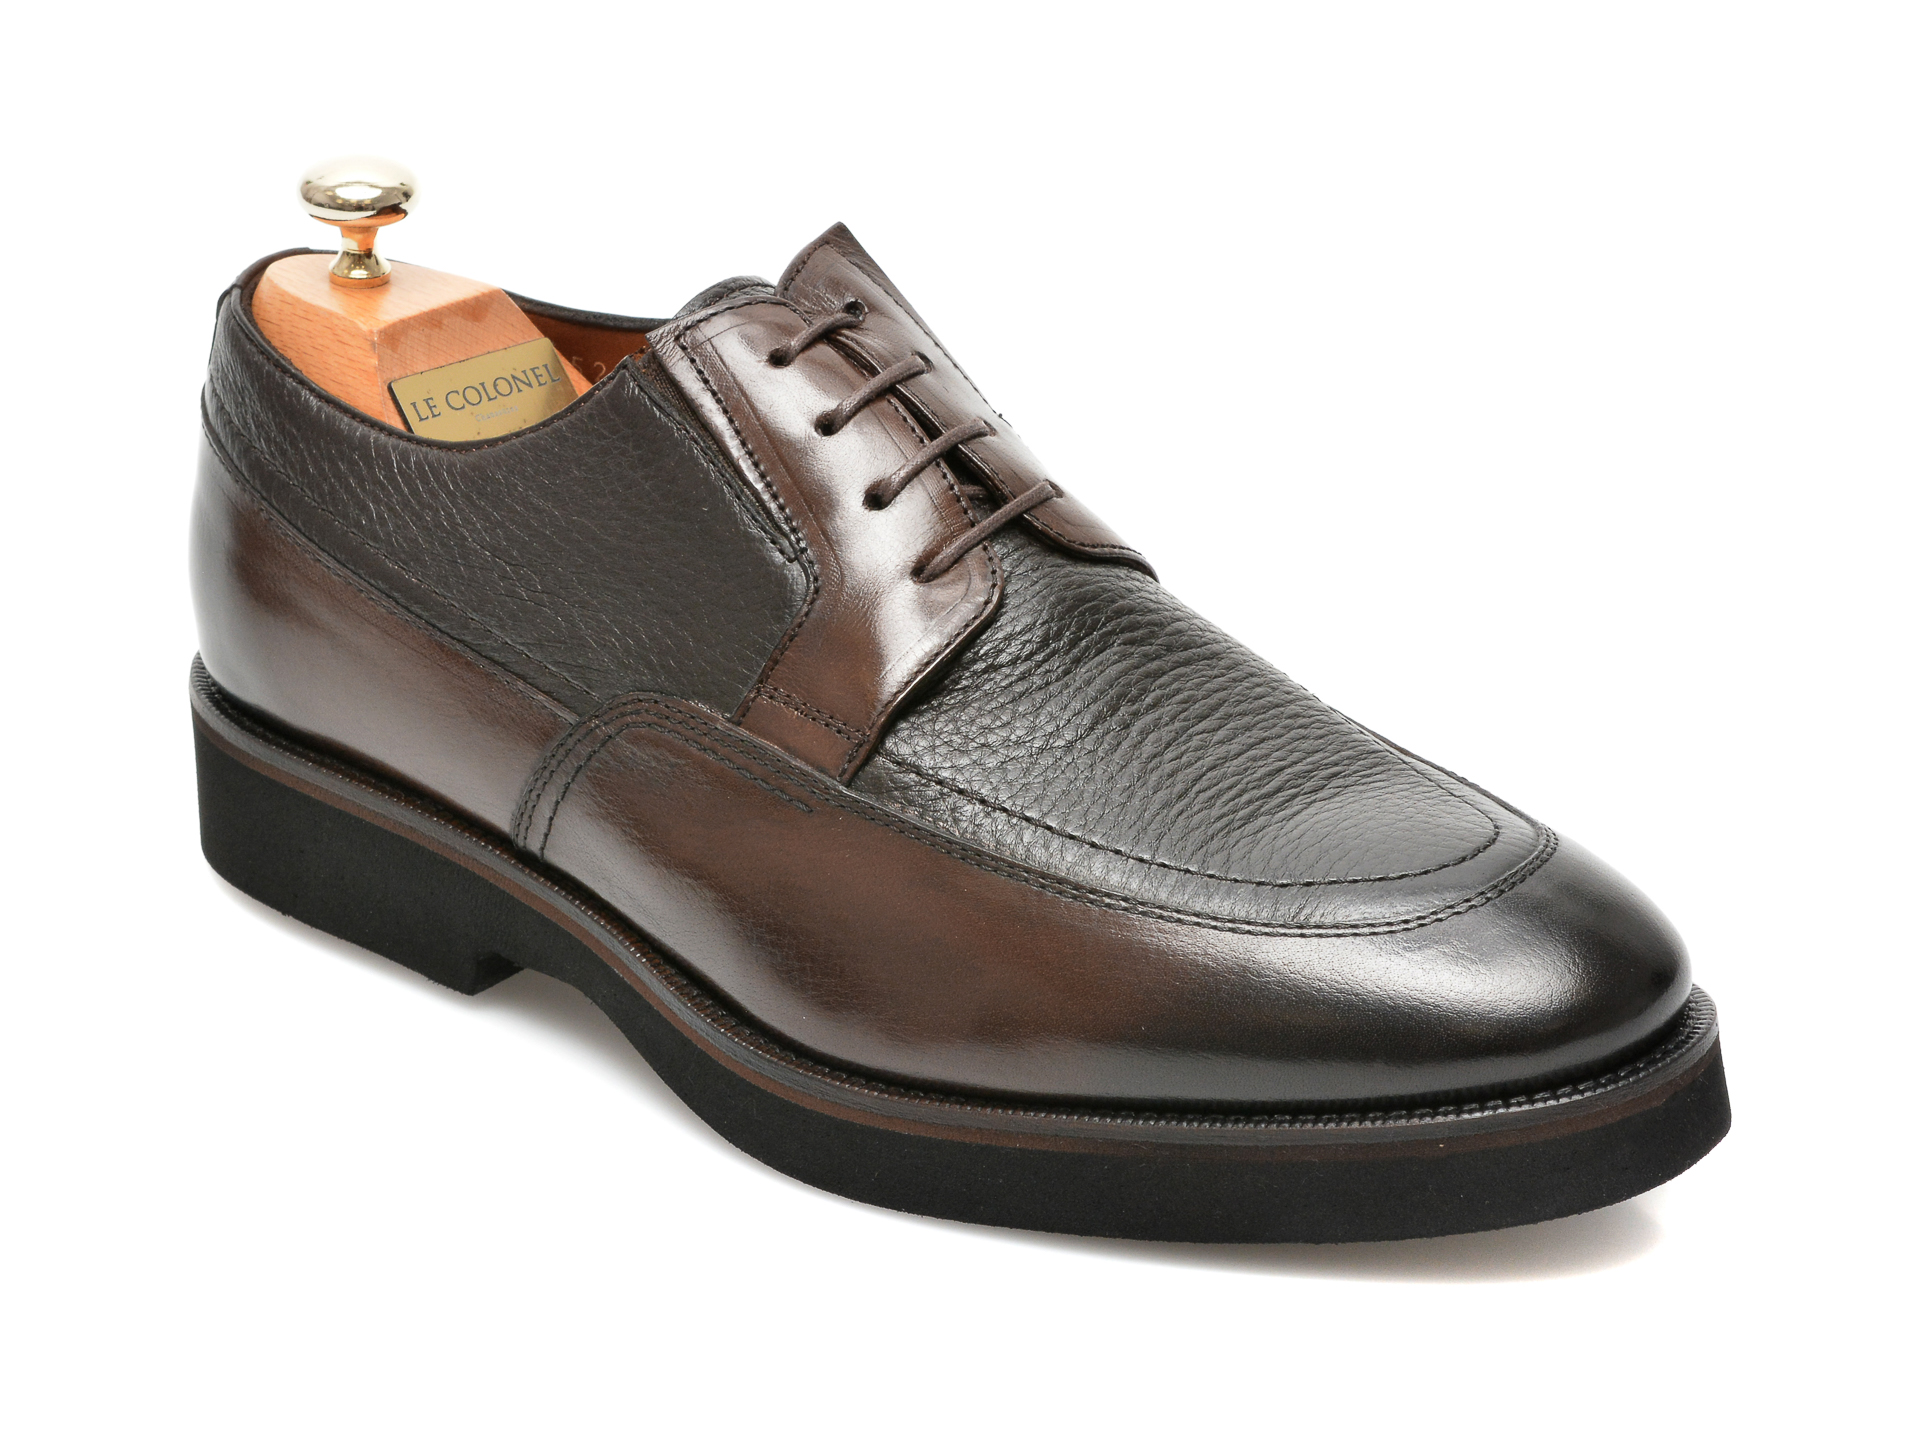 Pantofi LE COLONEL maro, 43452, din piele naturala 2023 ❤️ Pret Super tezyo.ro imagine noua 2022